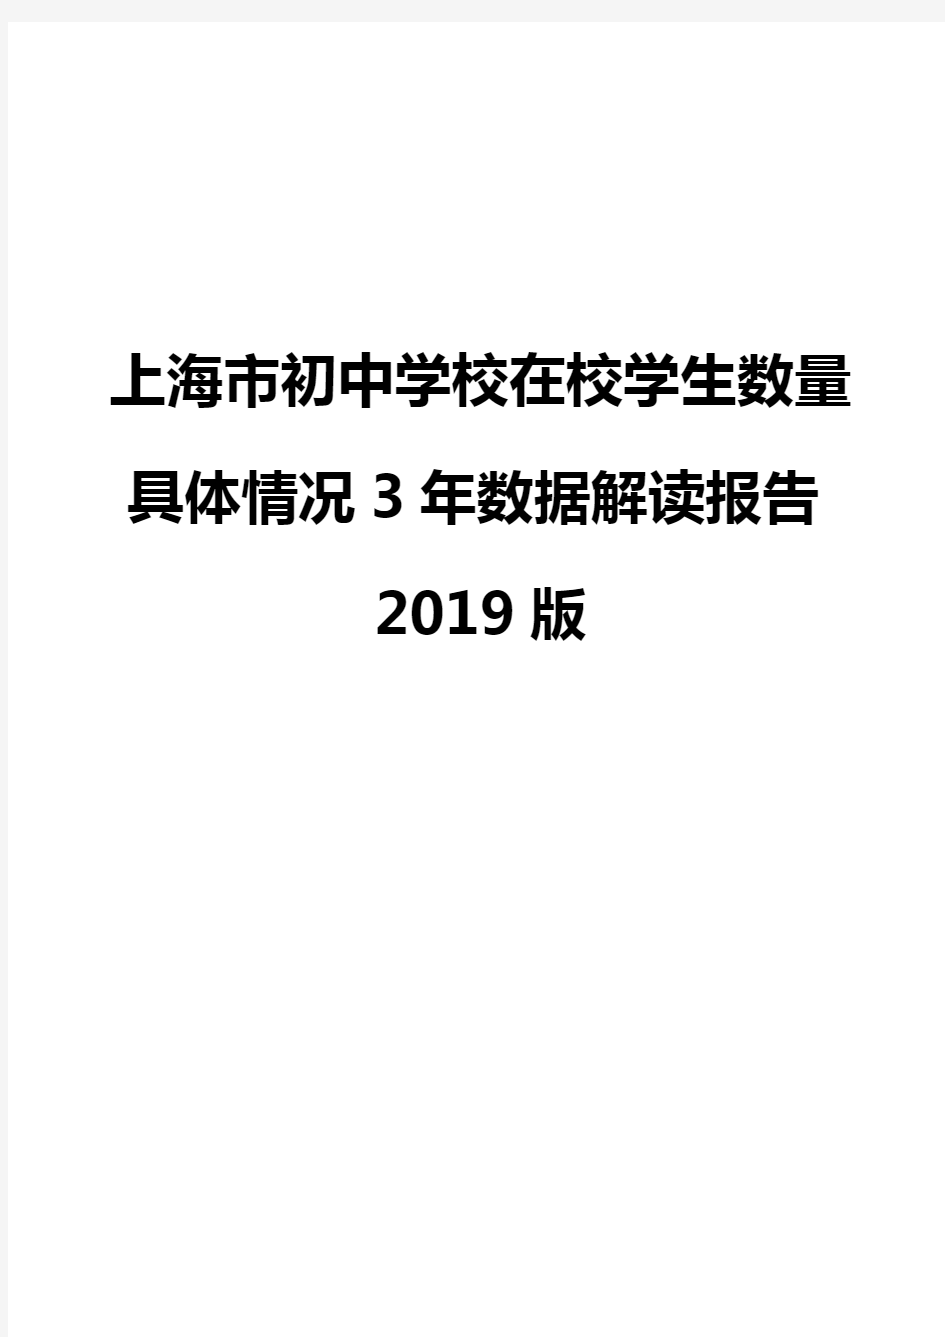 上海市初中学校在校学生数量具体情况3年数据解读报告2019版